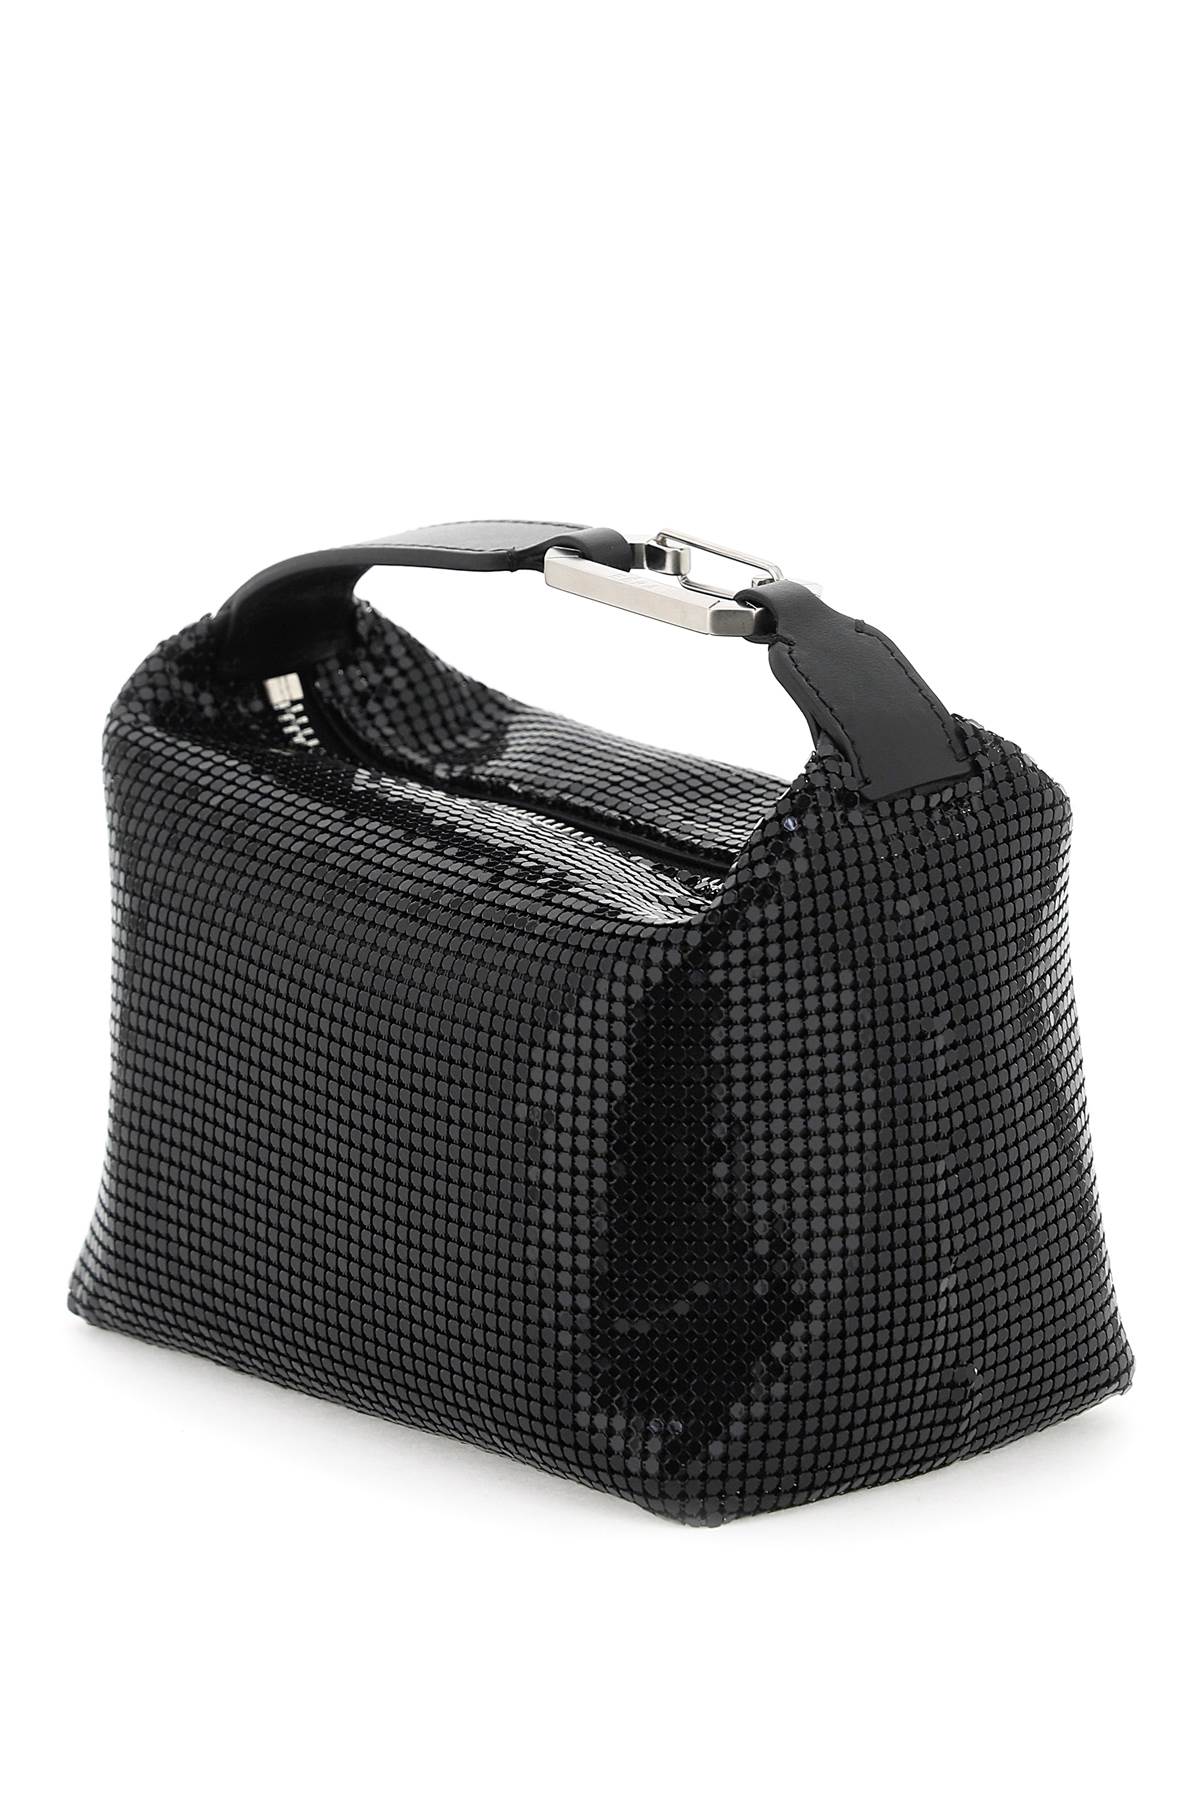 Eera 'moonbag' handbag-2